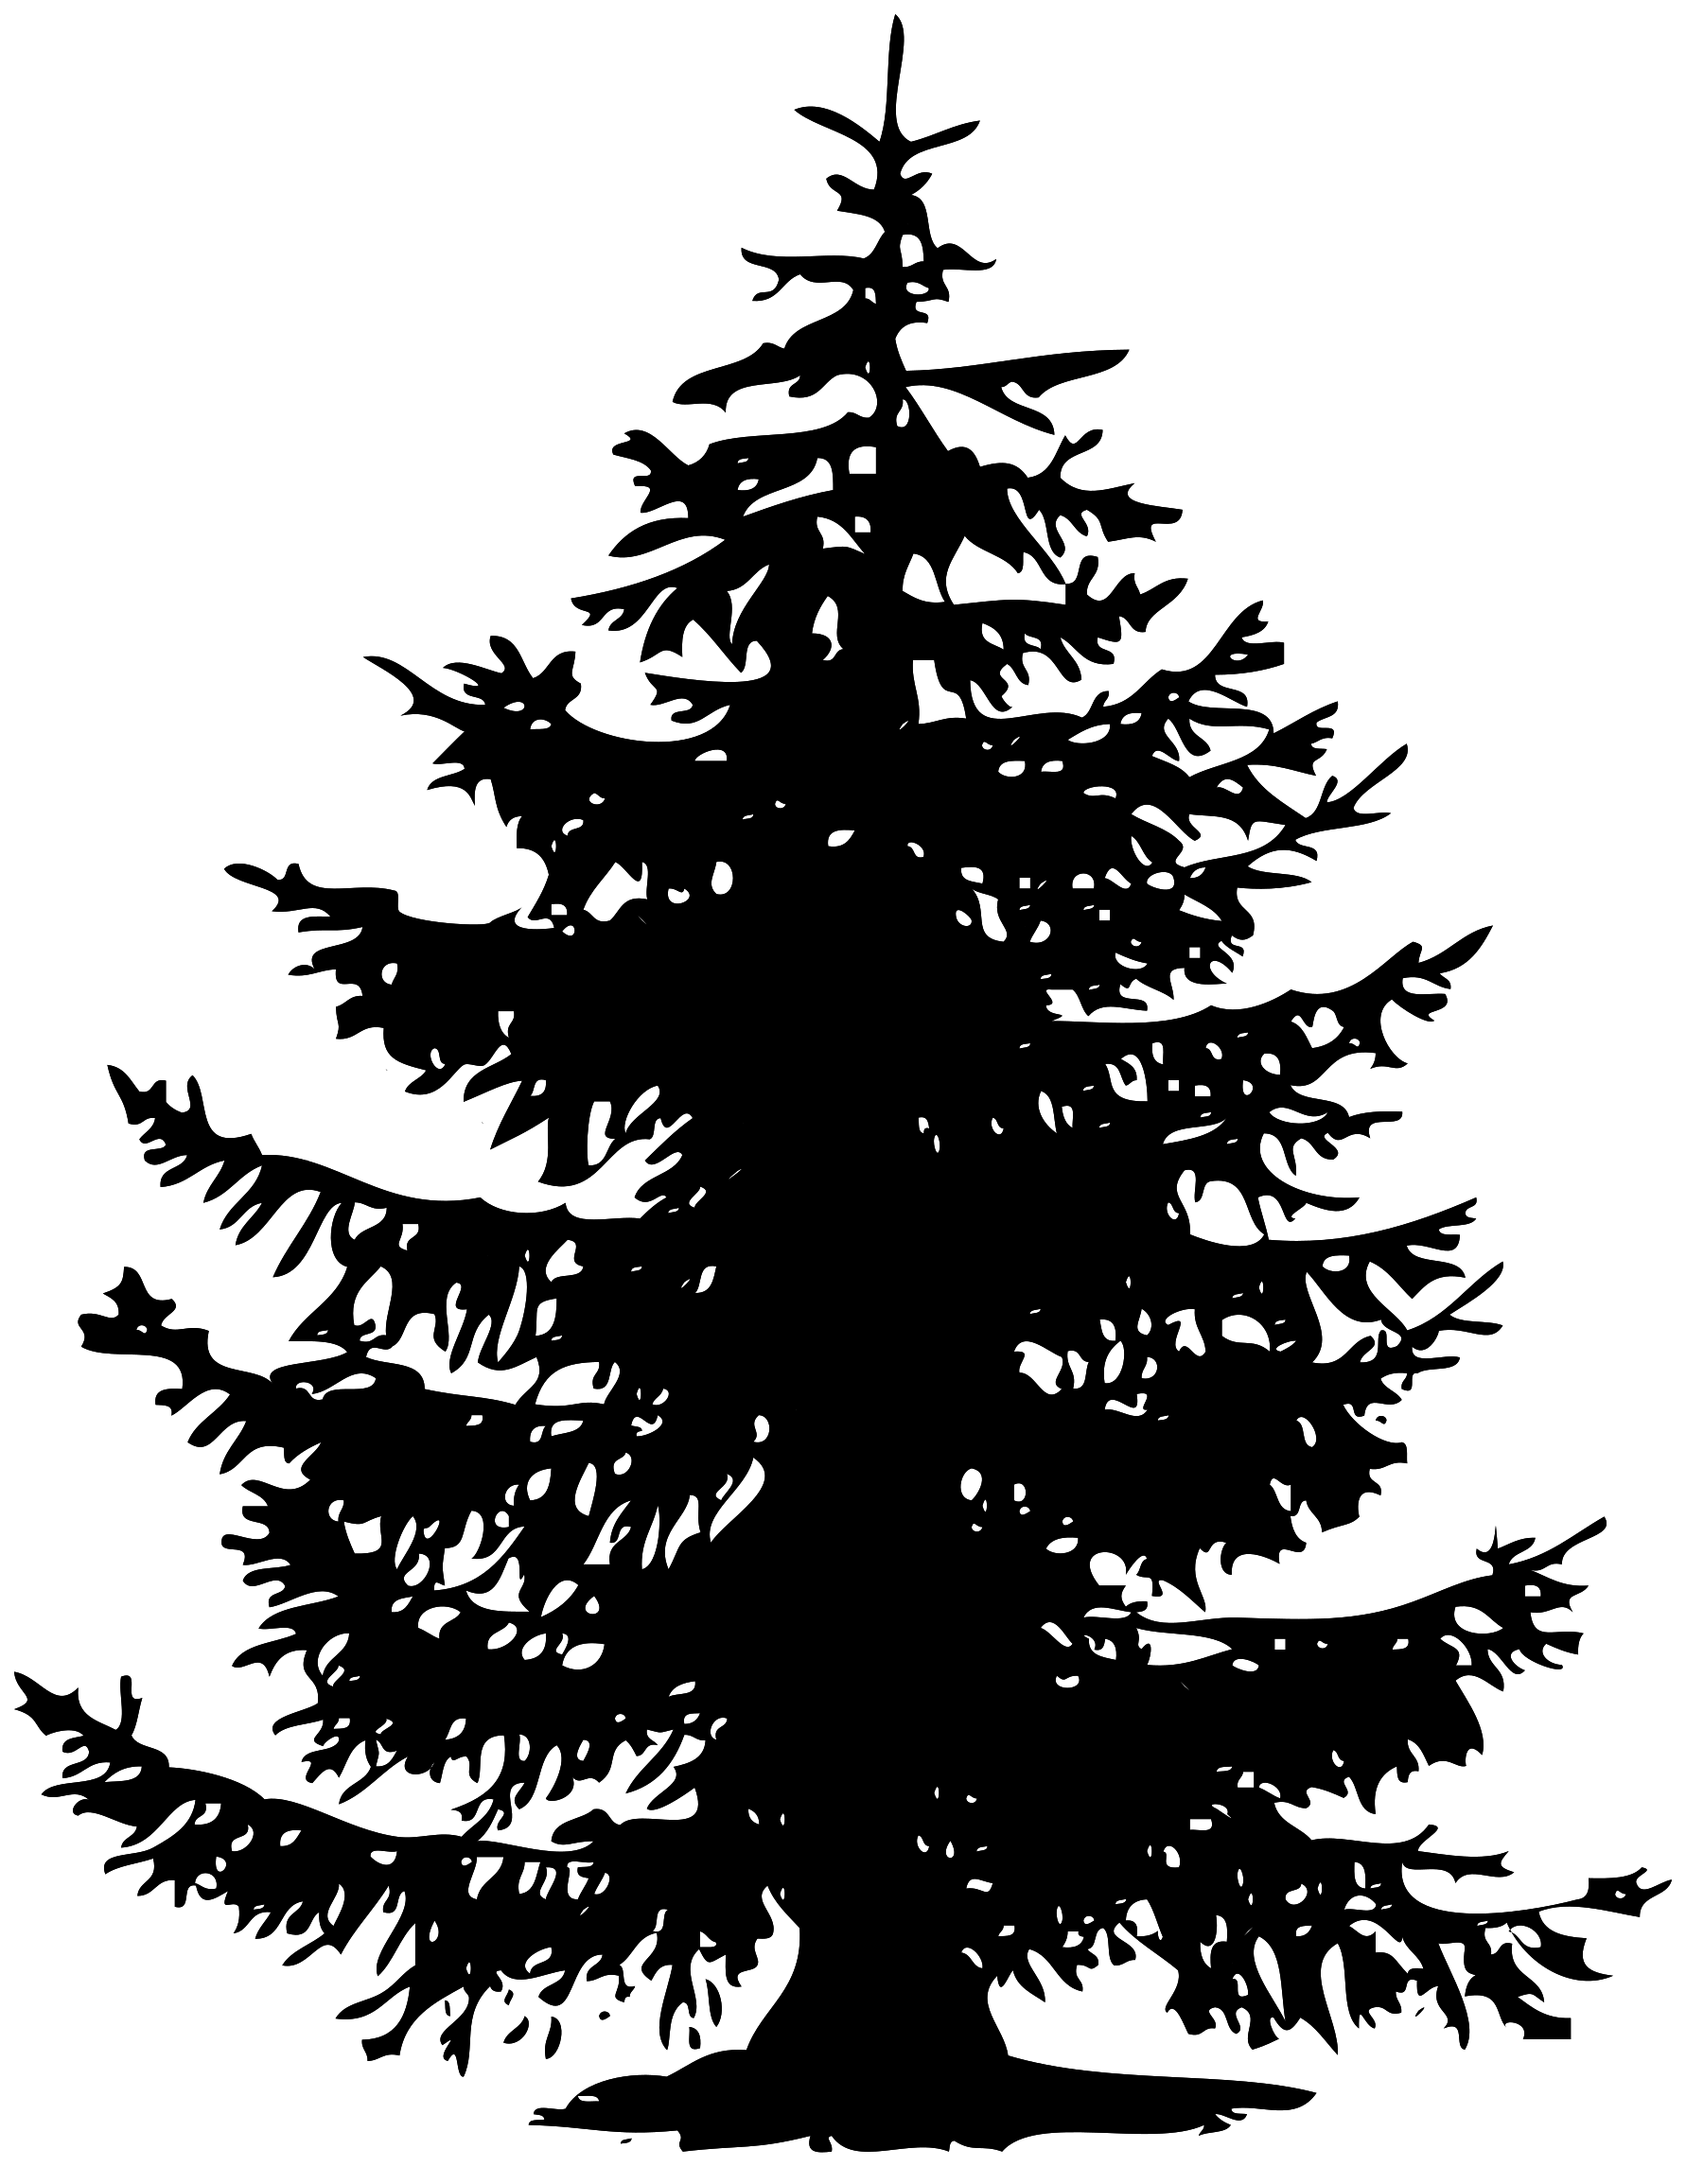 Immagine Trasparente della siluetta dellalbero nero